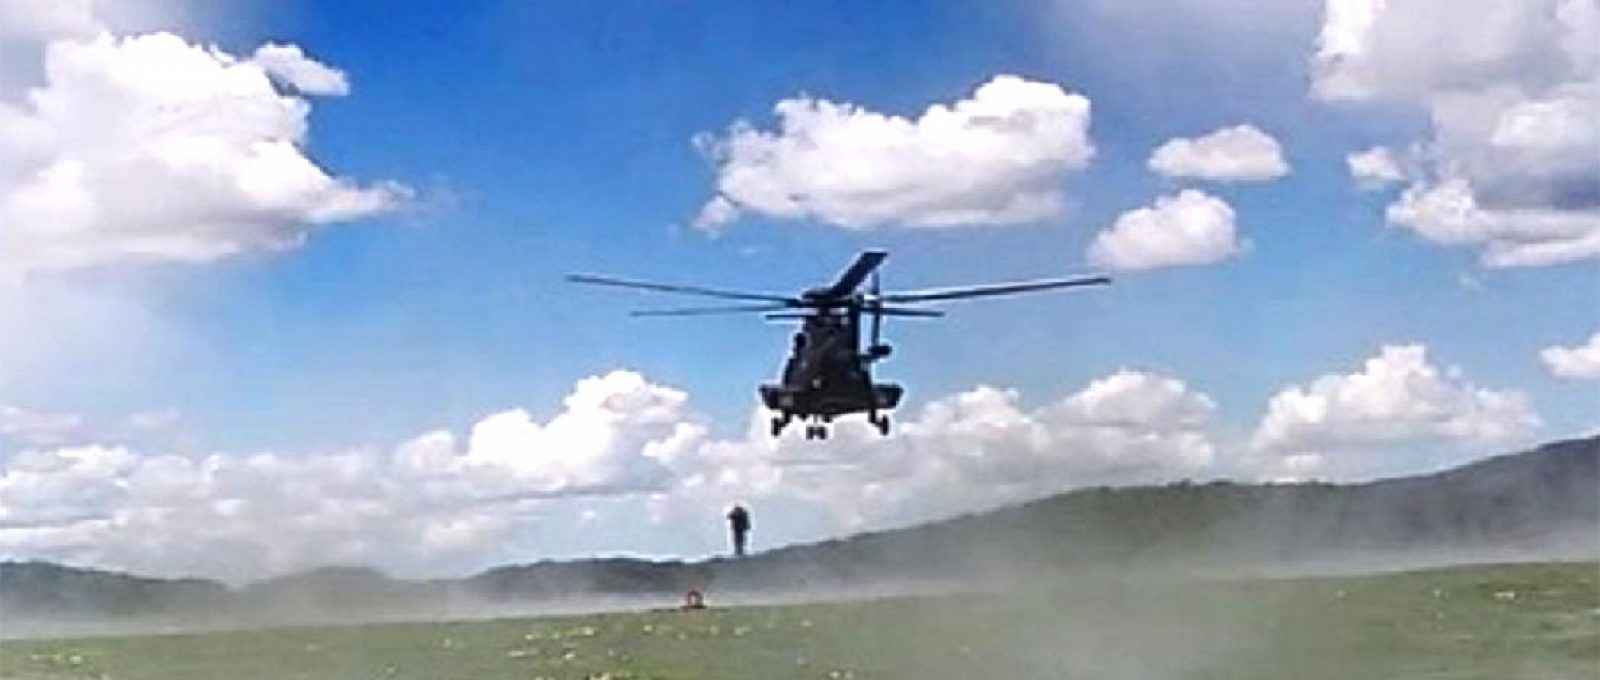 Capa-Insercao-Helicoptero